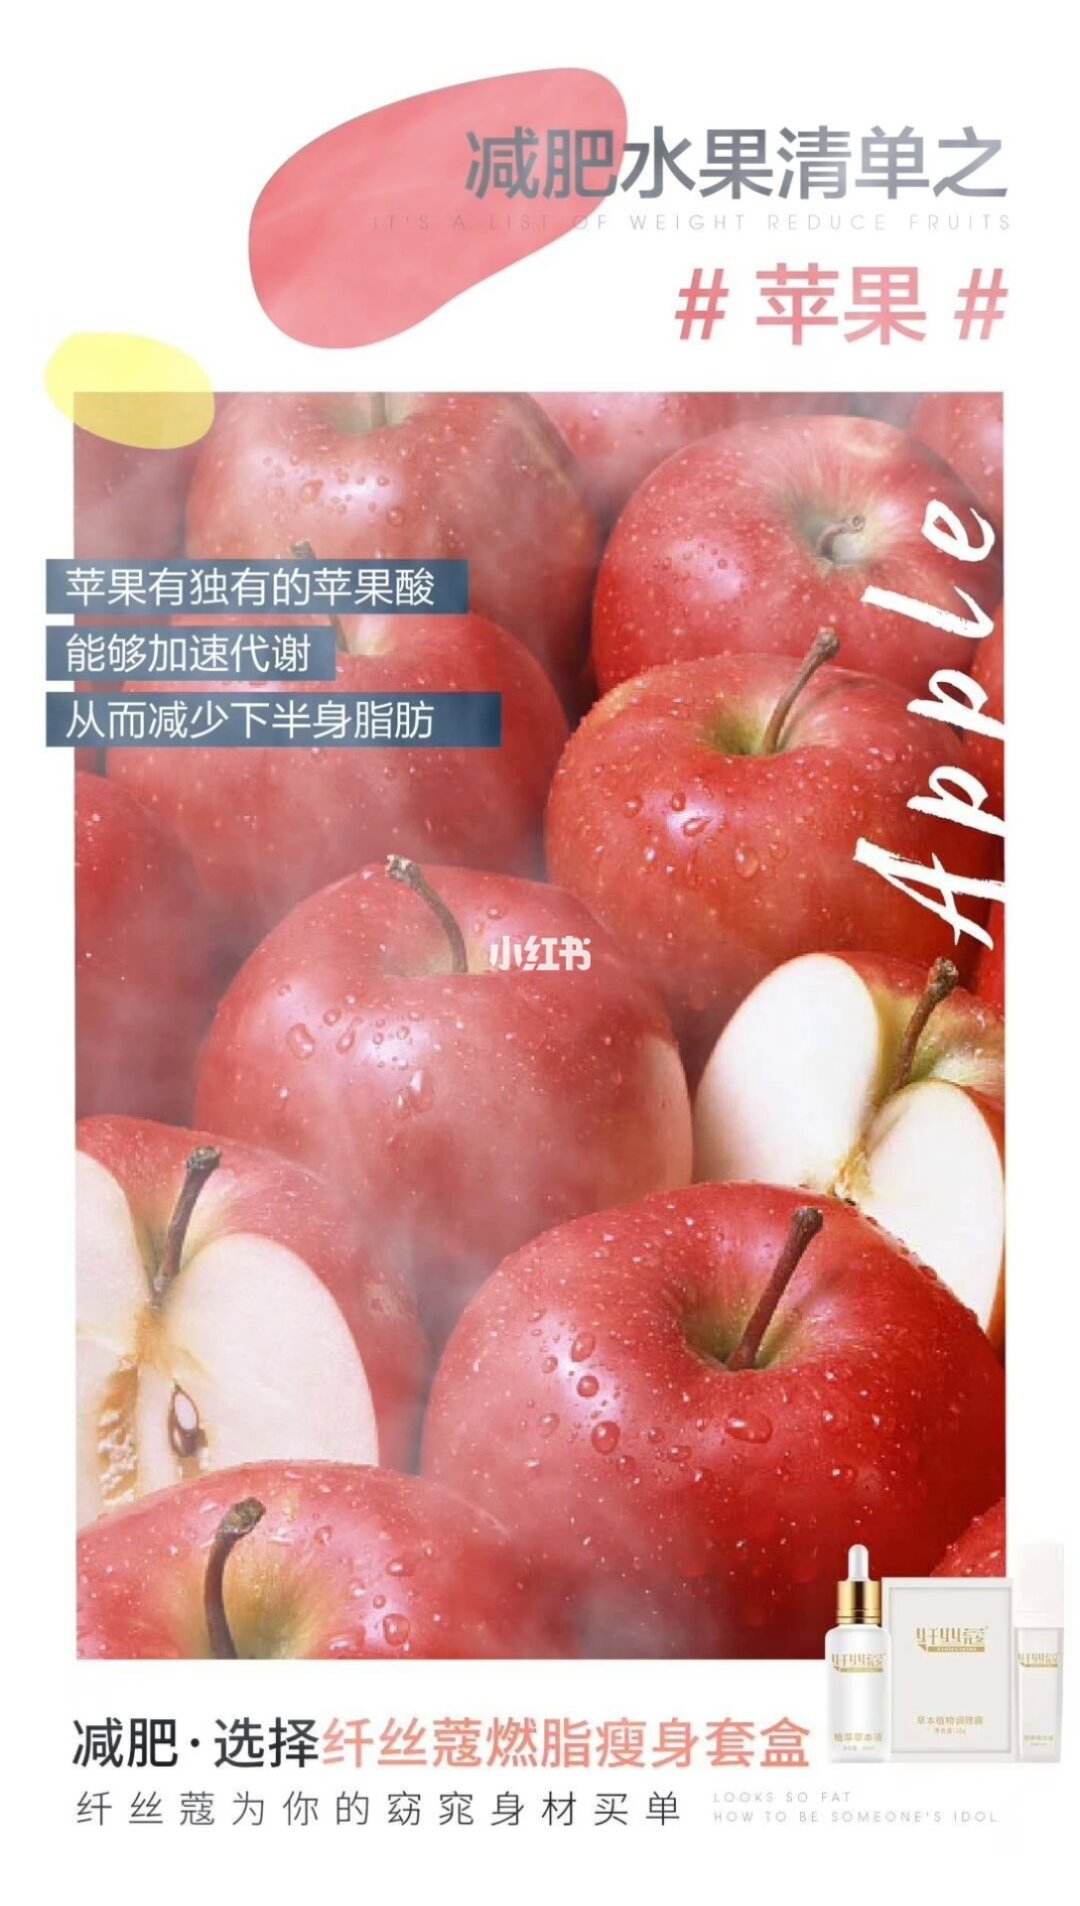 苹果可以减肥吗要怎样吃才能达到减肥效果苹果可以减肥吗